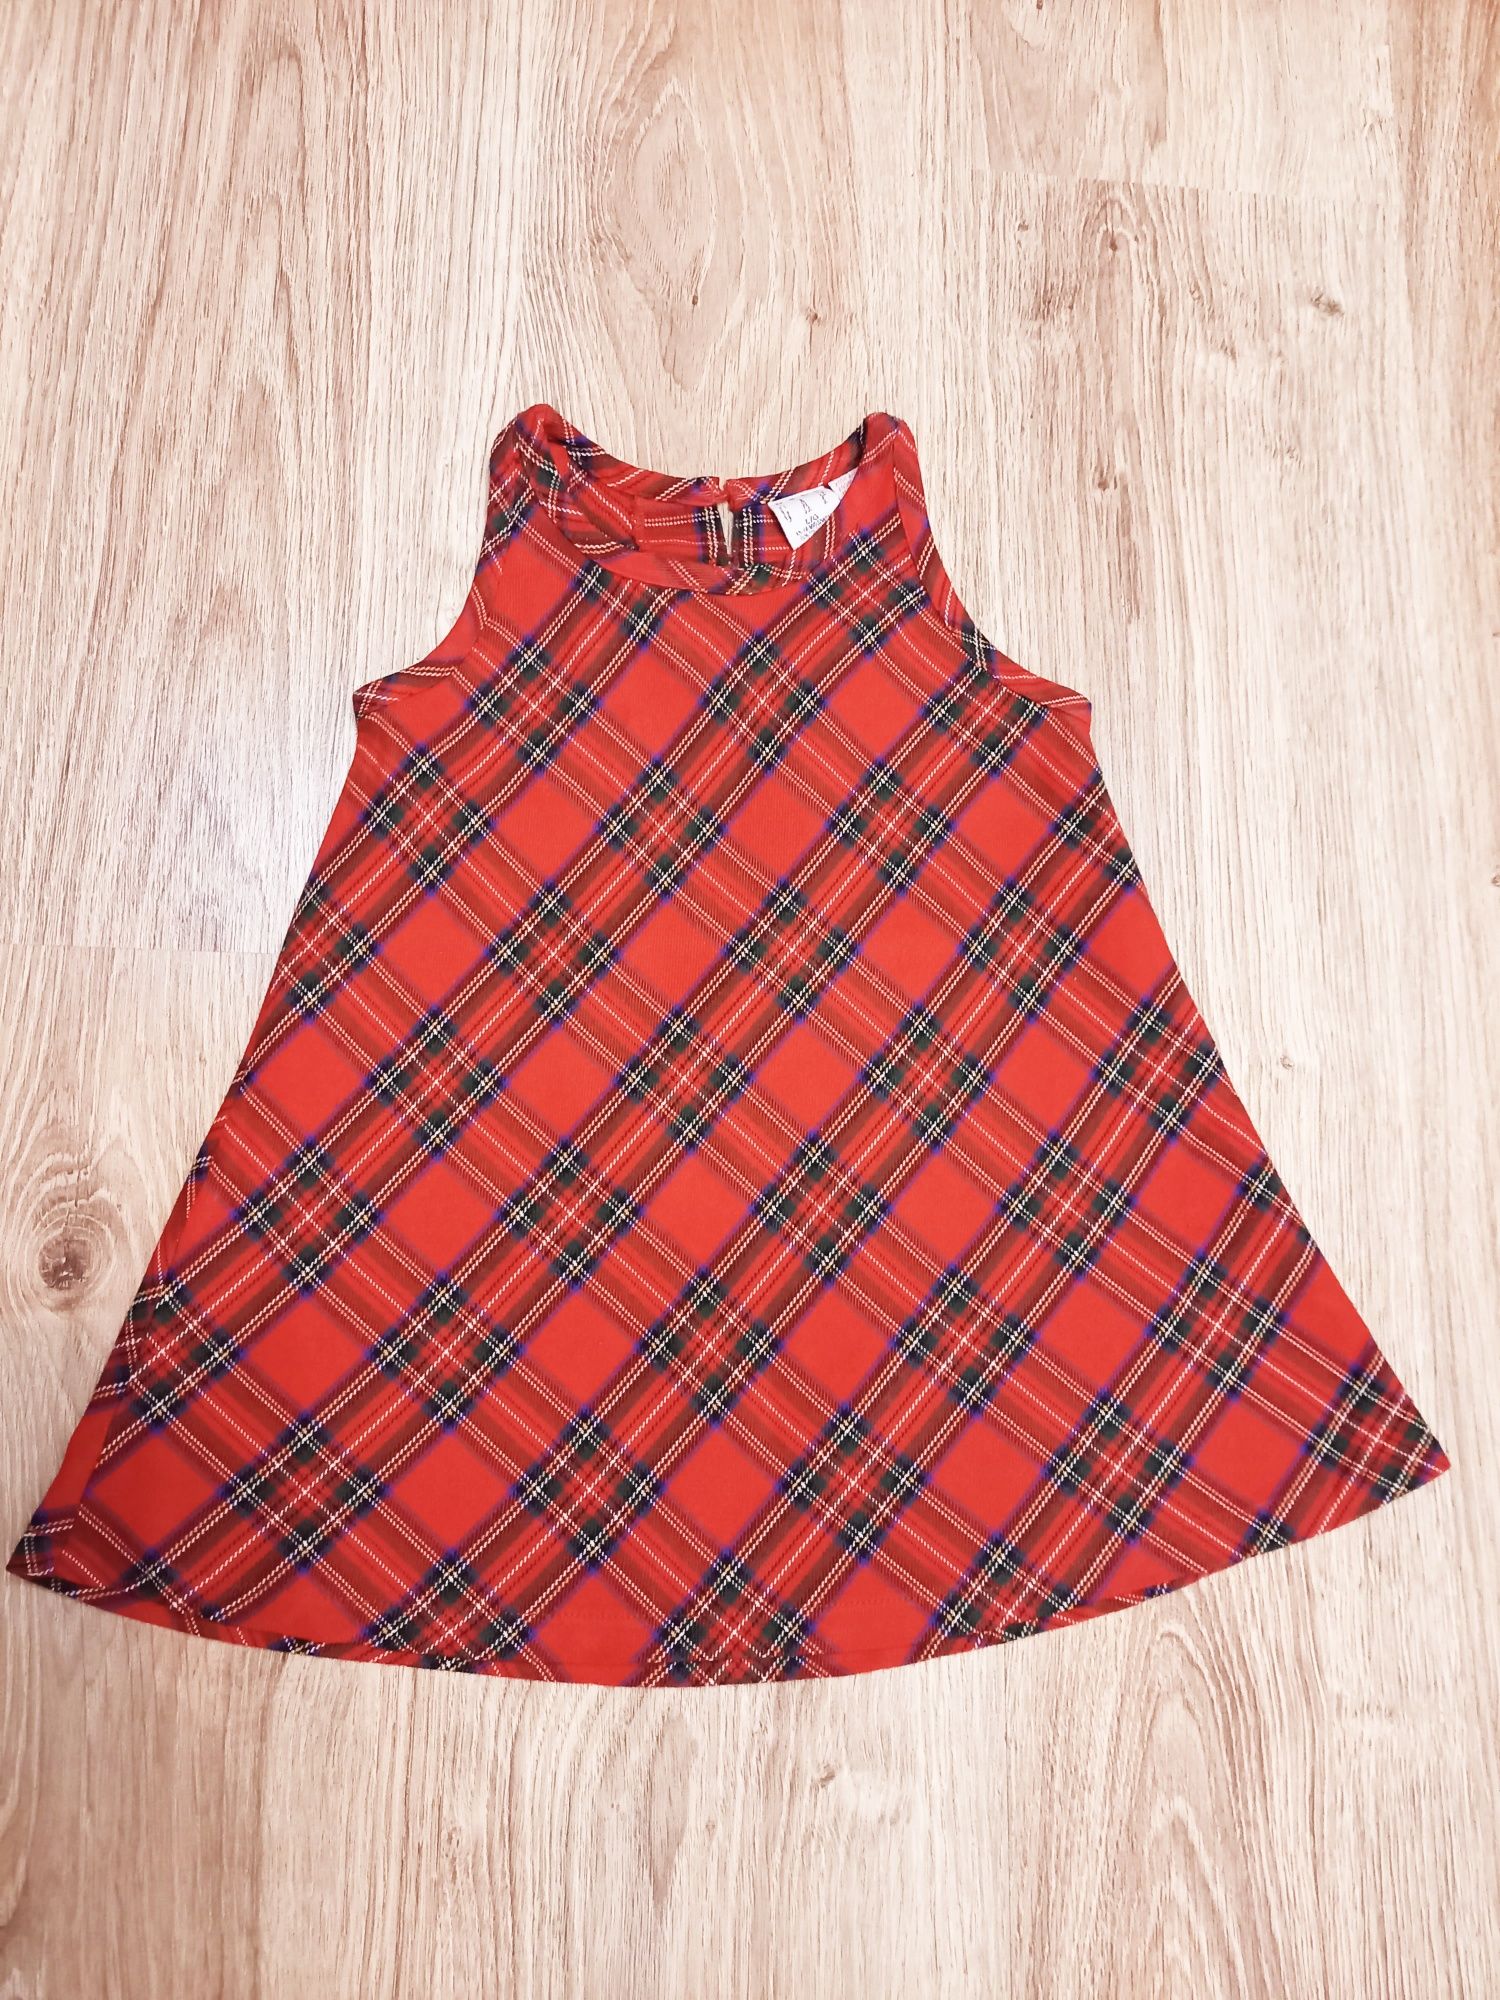 Sukienka szkocka krata, czerwona GapKids 12-18 m-cy